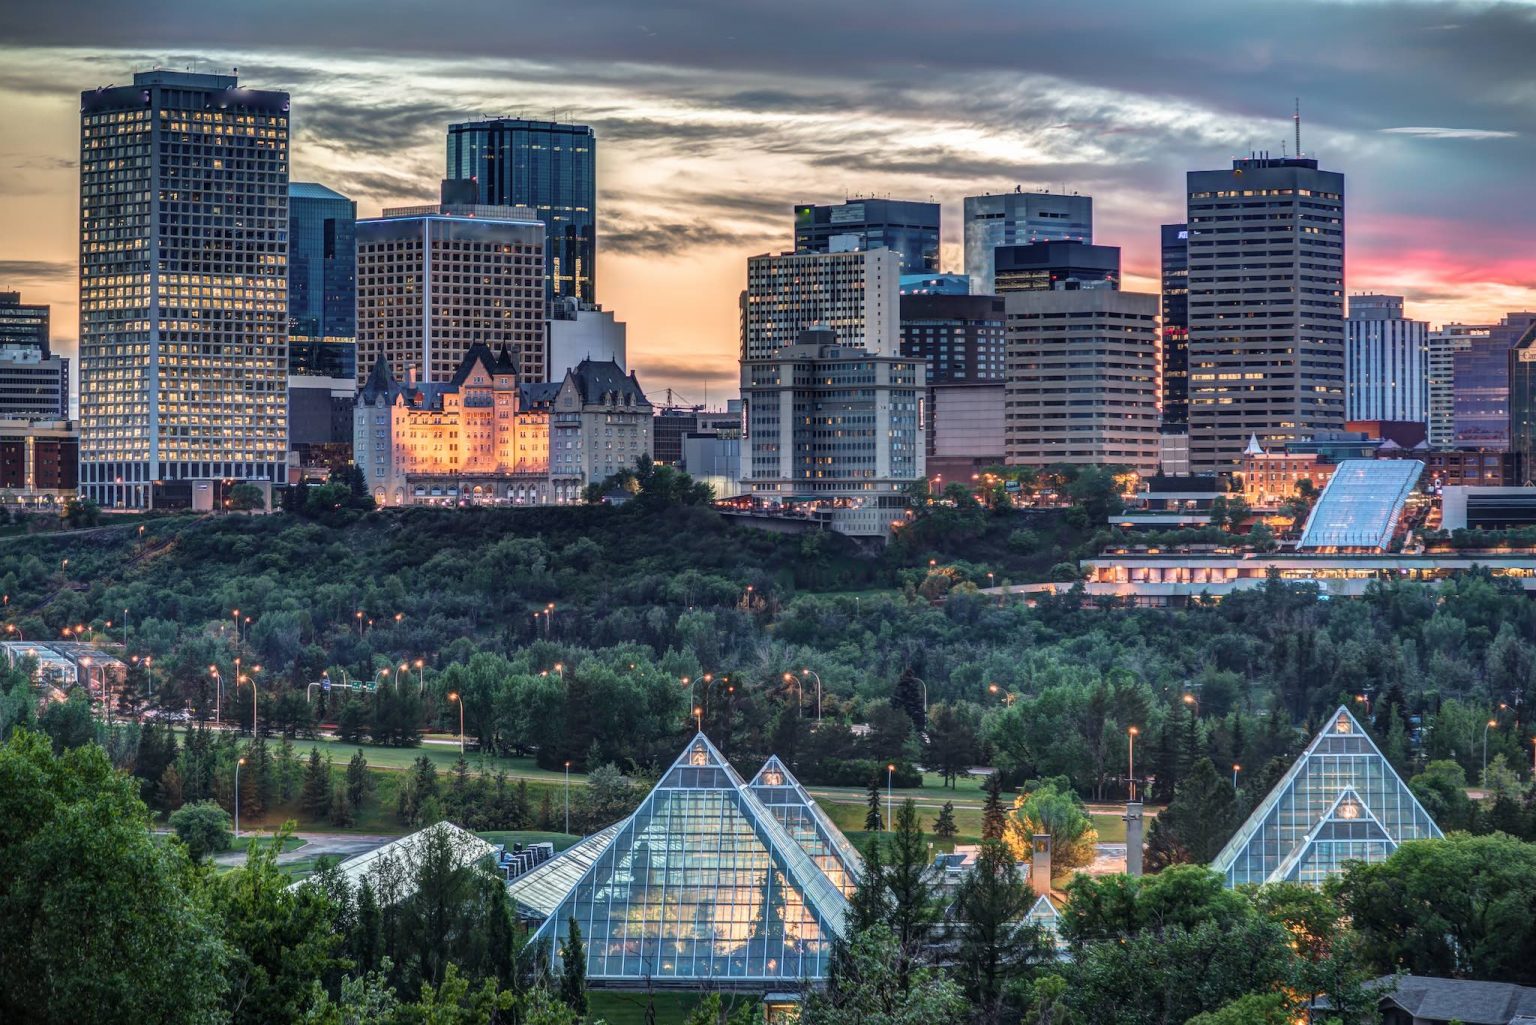 Top 10 attractions in Edmonton - TripBeam Blog